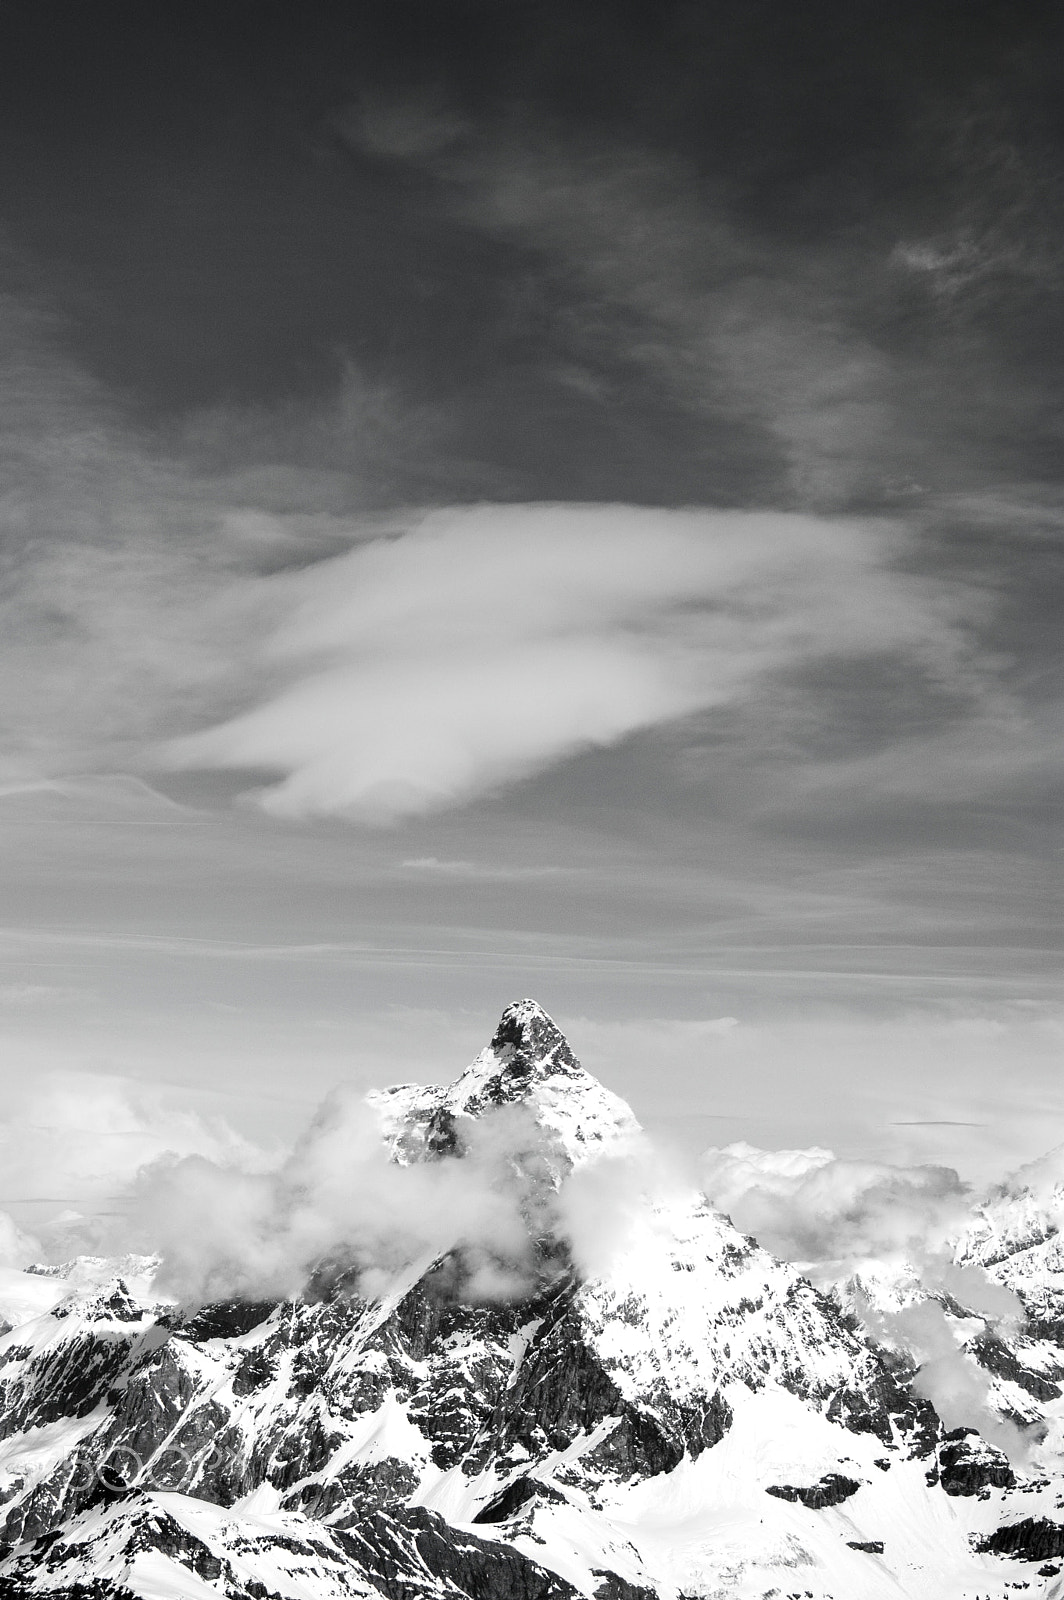 AF DX Fisheye-Nikkor 10.5mm f/2.8G ED + 2.8x sample photo. Matterhorn photography